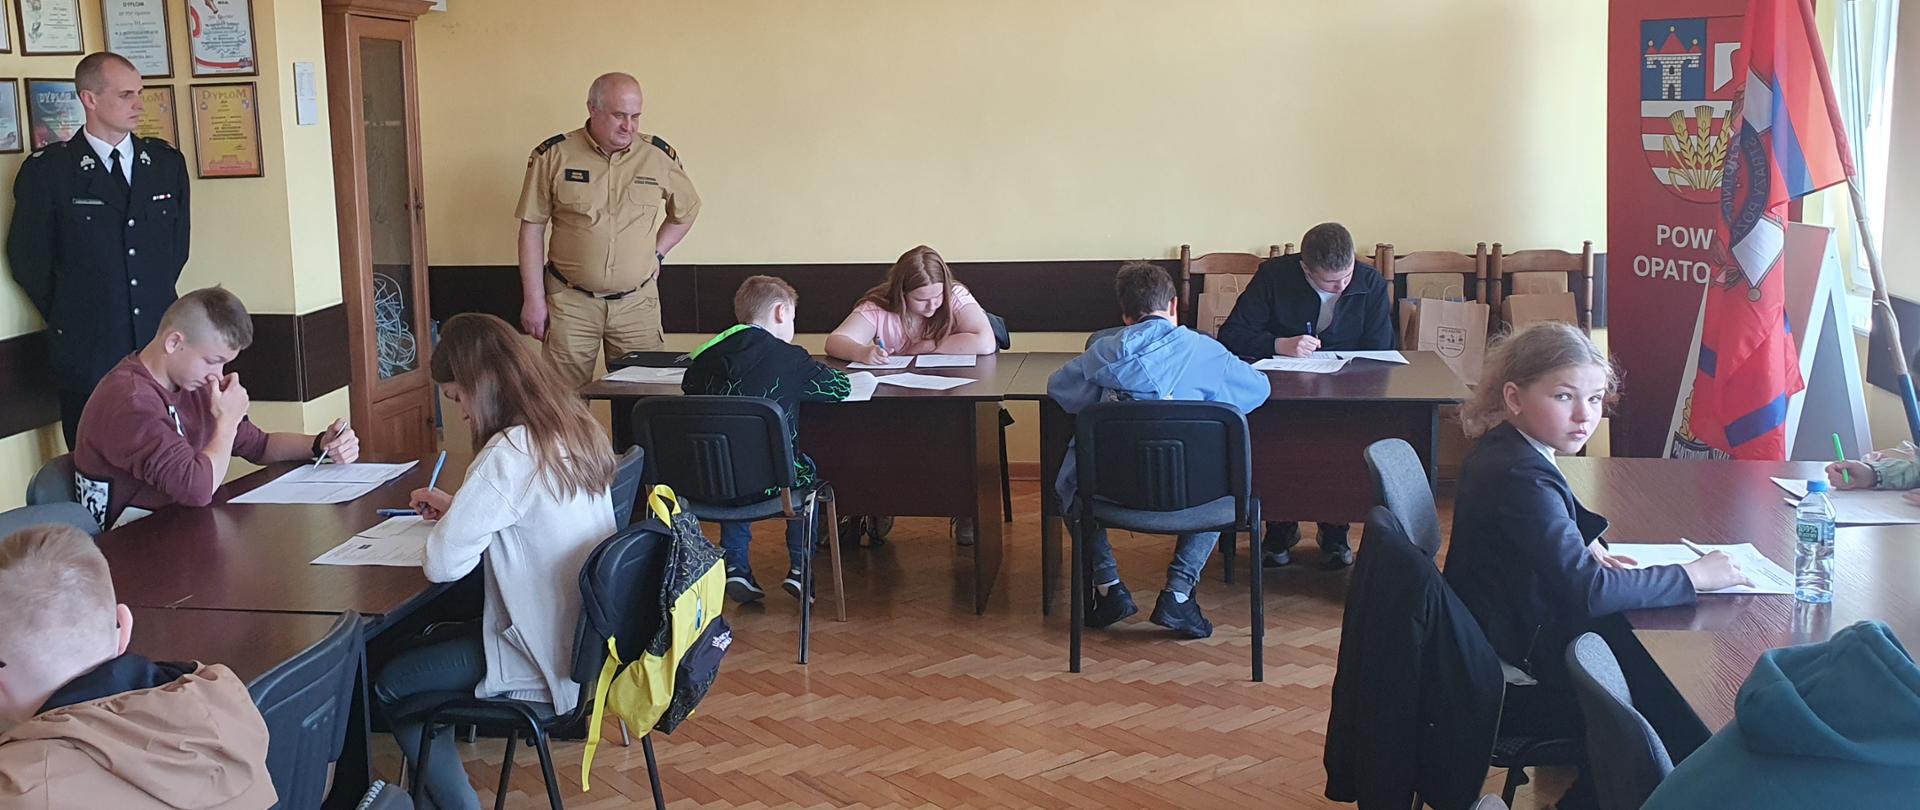 Zdjęcie przedstawia uczestników konkursu OTWP podczas testu pisemnego. W tle komisja egzaminacyjna.